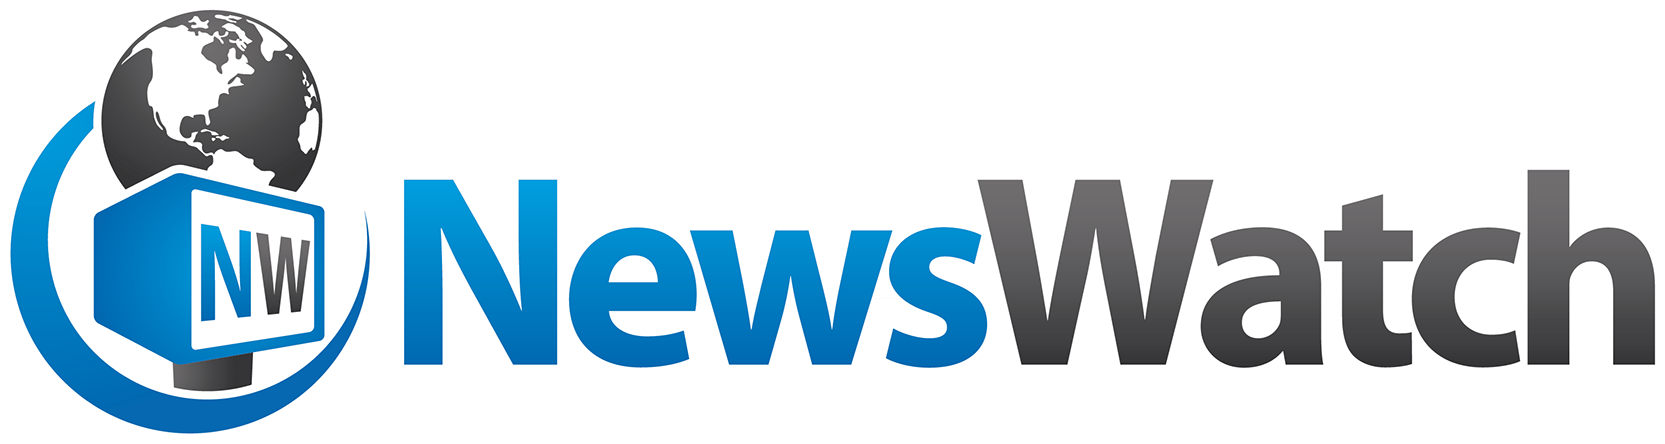 NewsWatch Background Logo